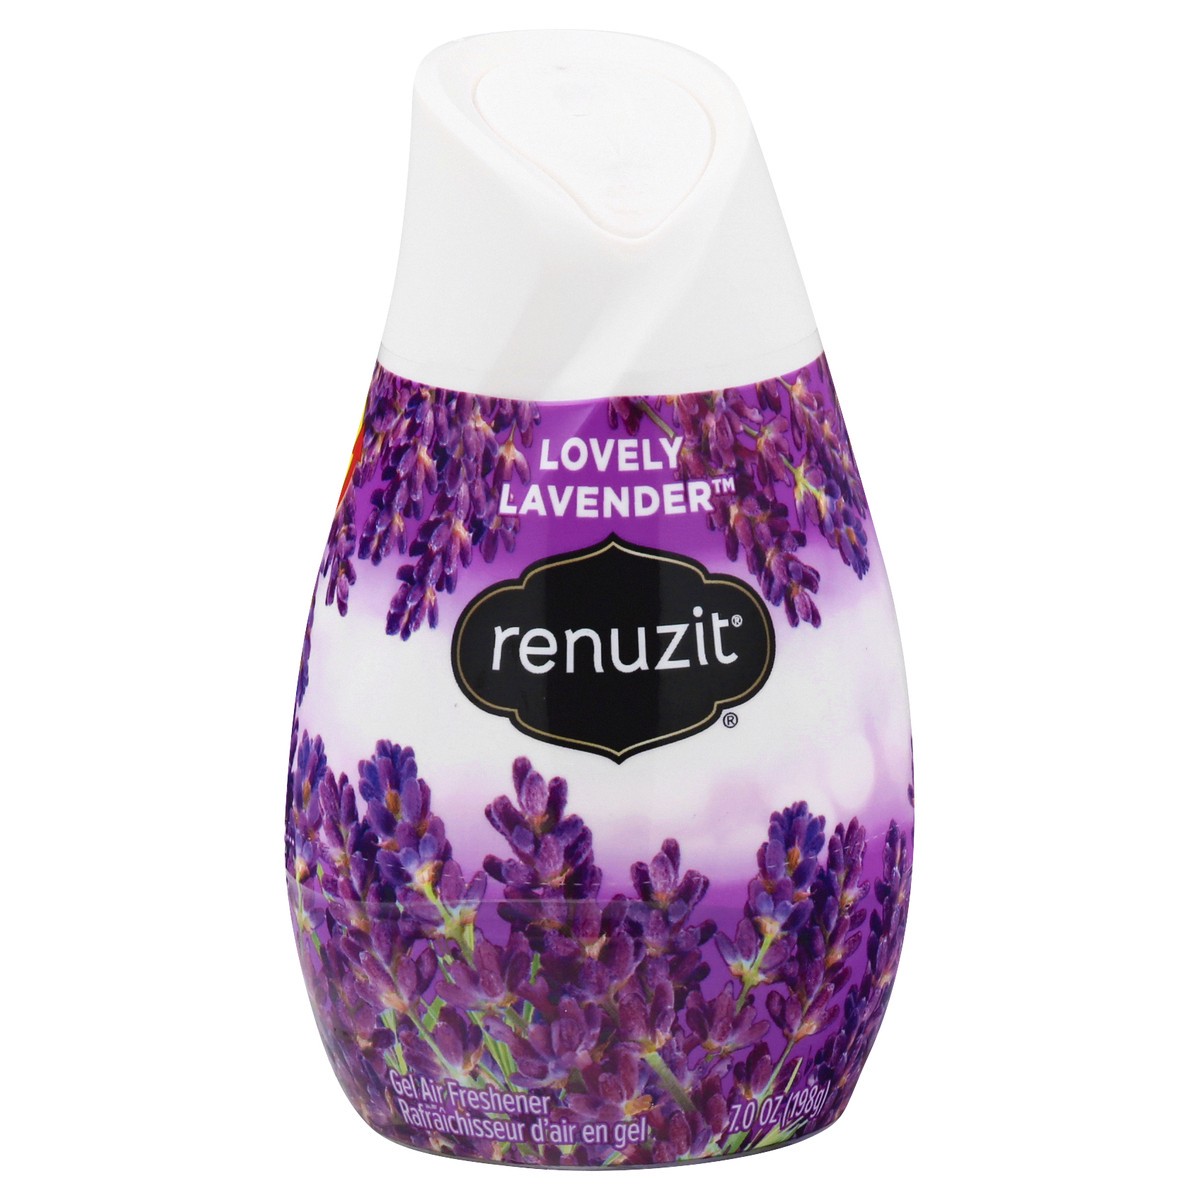 slide 1 of 1, Renuzit Lovely Lavender Gel Air Freshener 7.0 oz, 7 oz